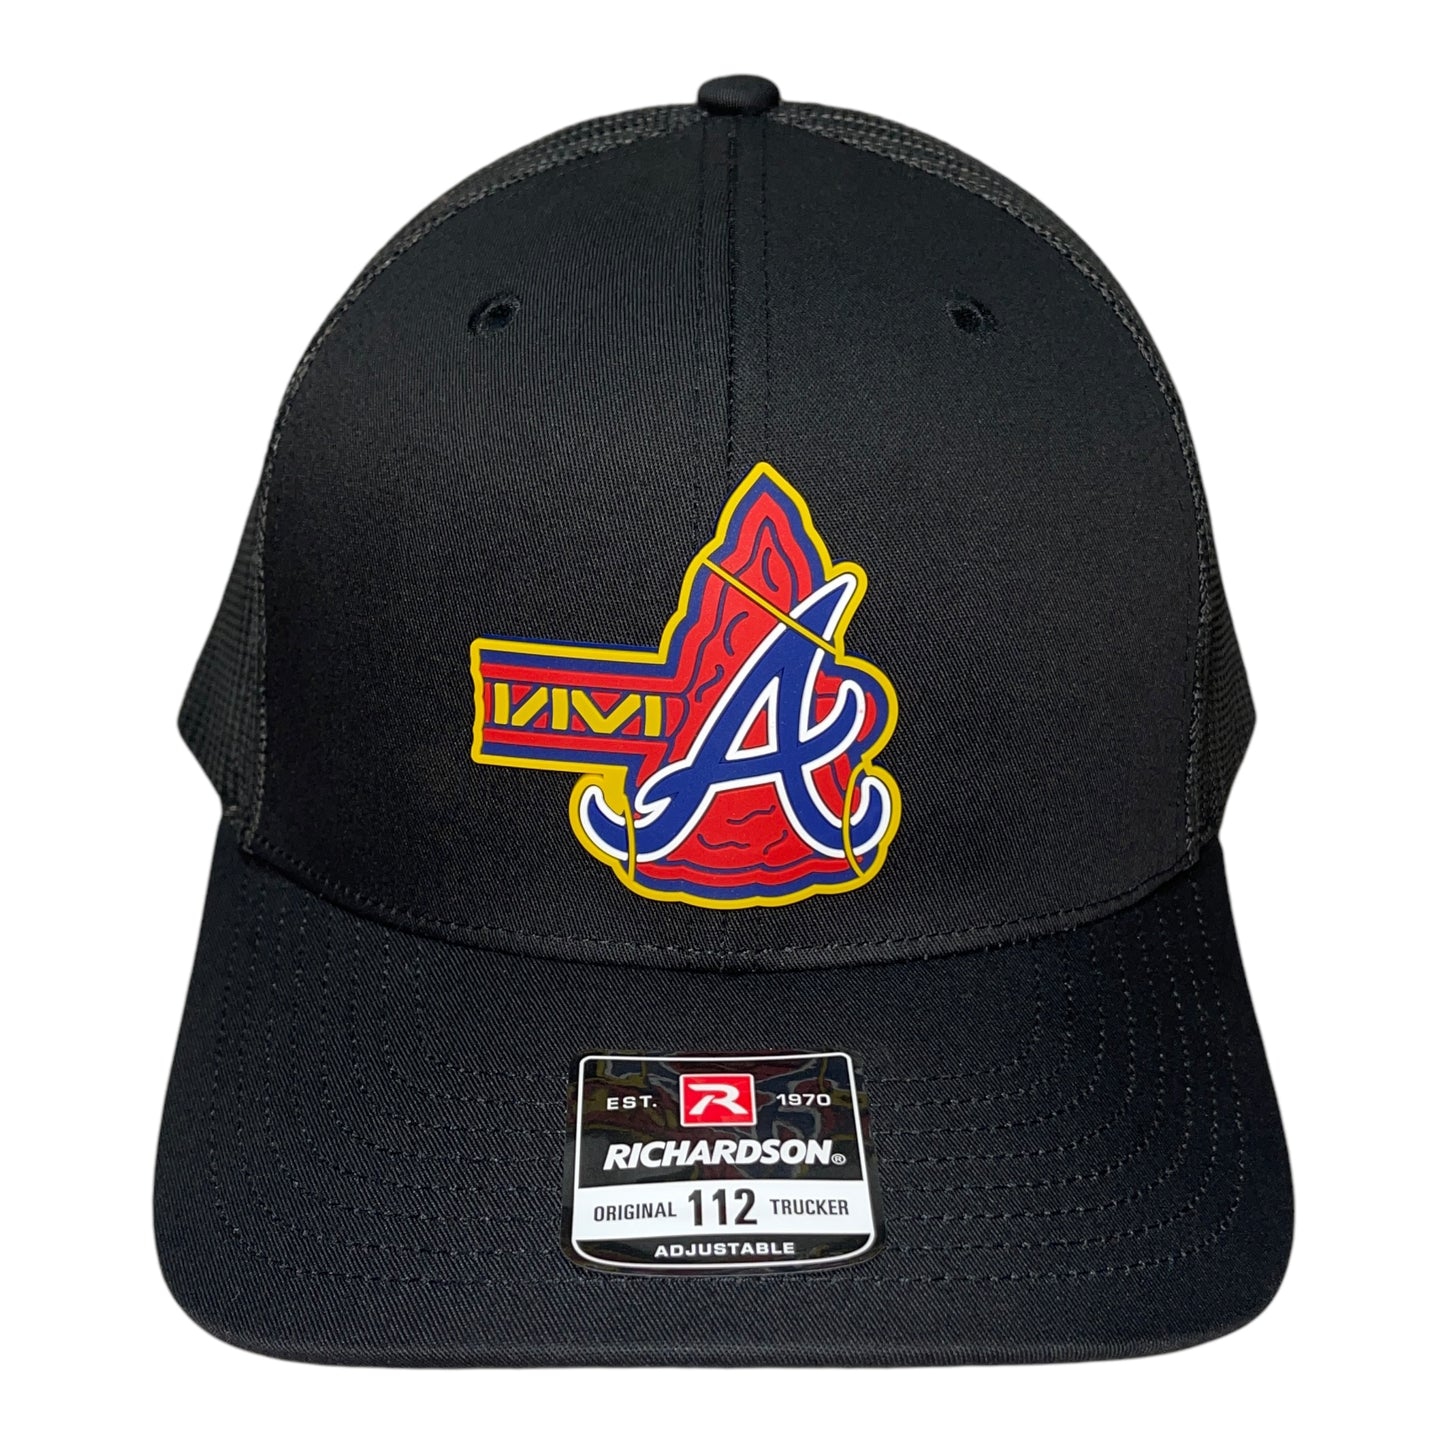 Atlanta Braves Tomahawk 3D Snapback Trucker Hat- Black